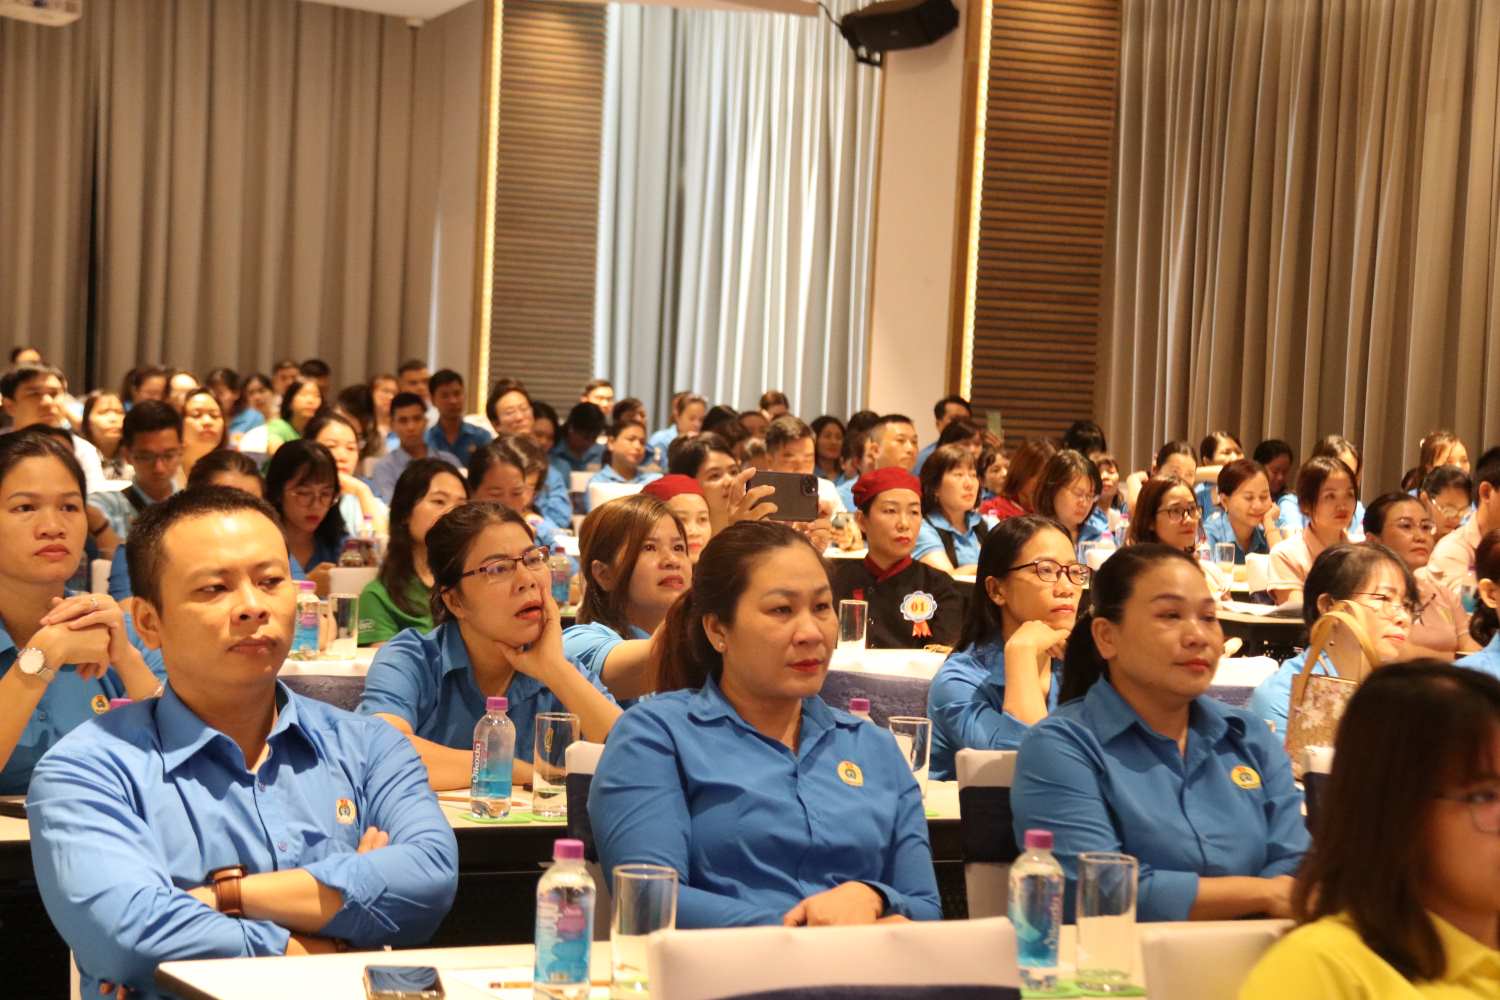 Đoàn viên, an toàn vệ sinh viên từ các CĐCS trên địa bàn thành phố Nha Trang hào hứng theo dõi hội thi với những kiến thức an toàn lao động bổ ích. Ảnh: Phương Linh